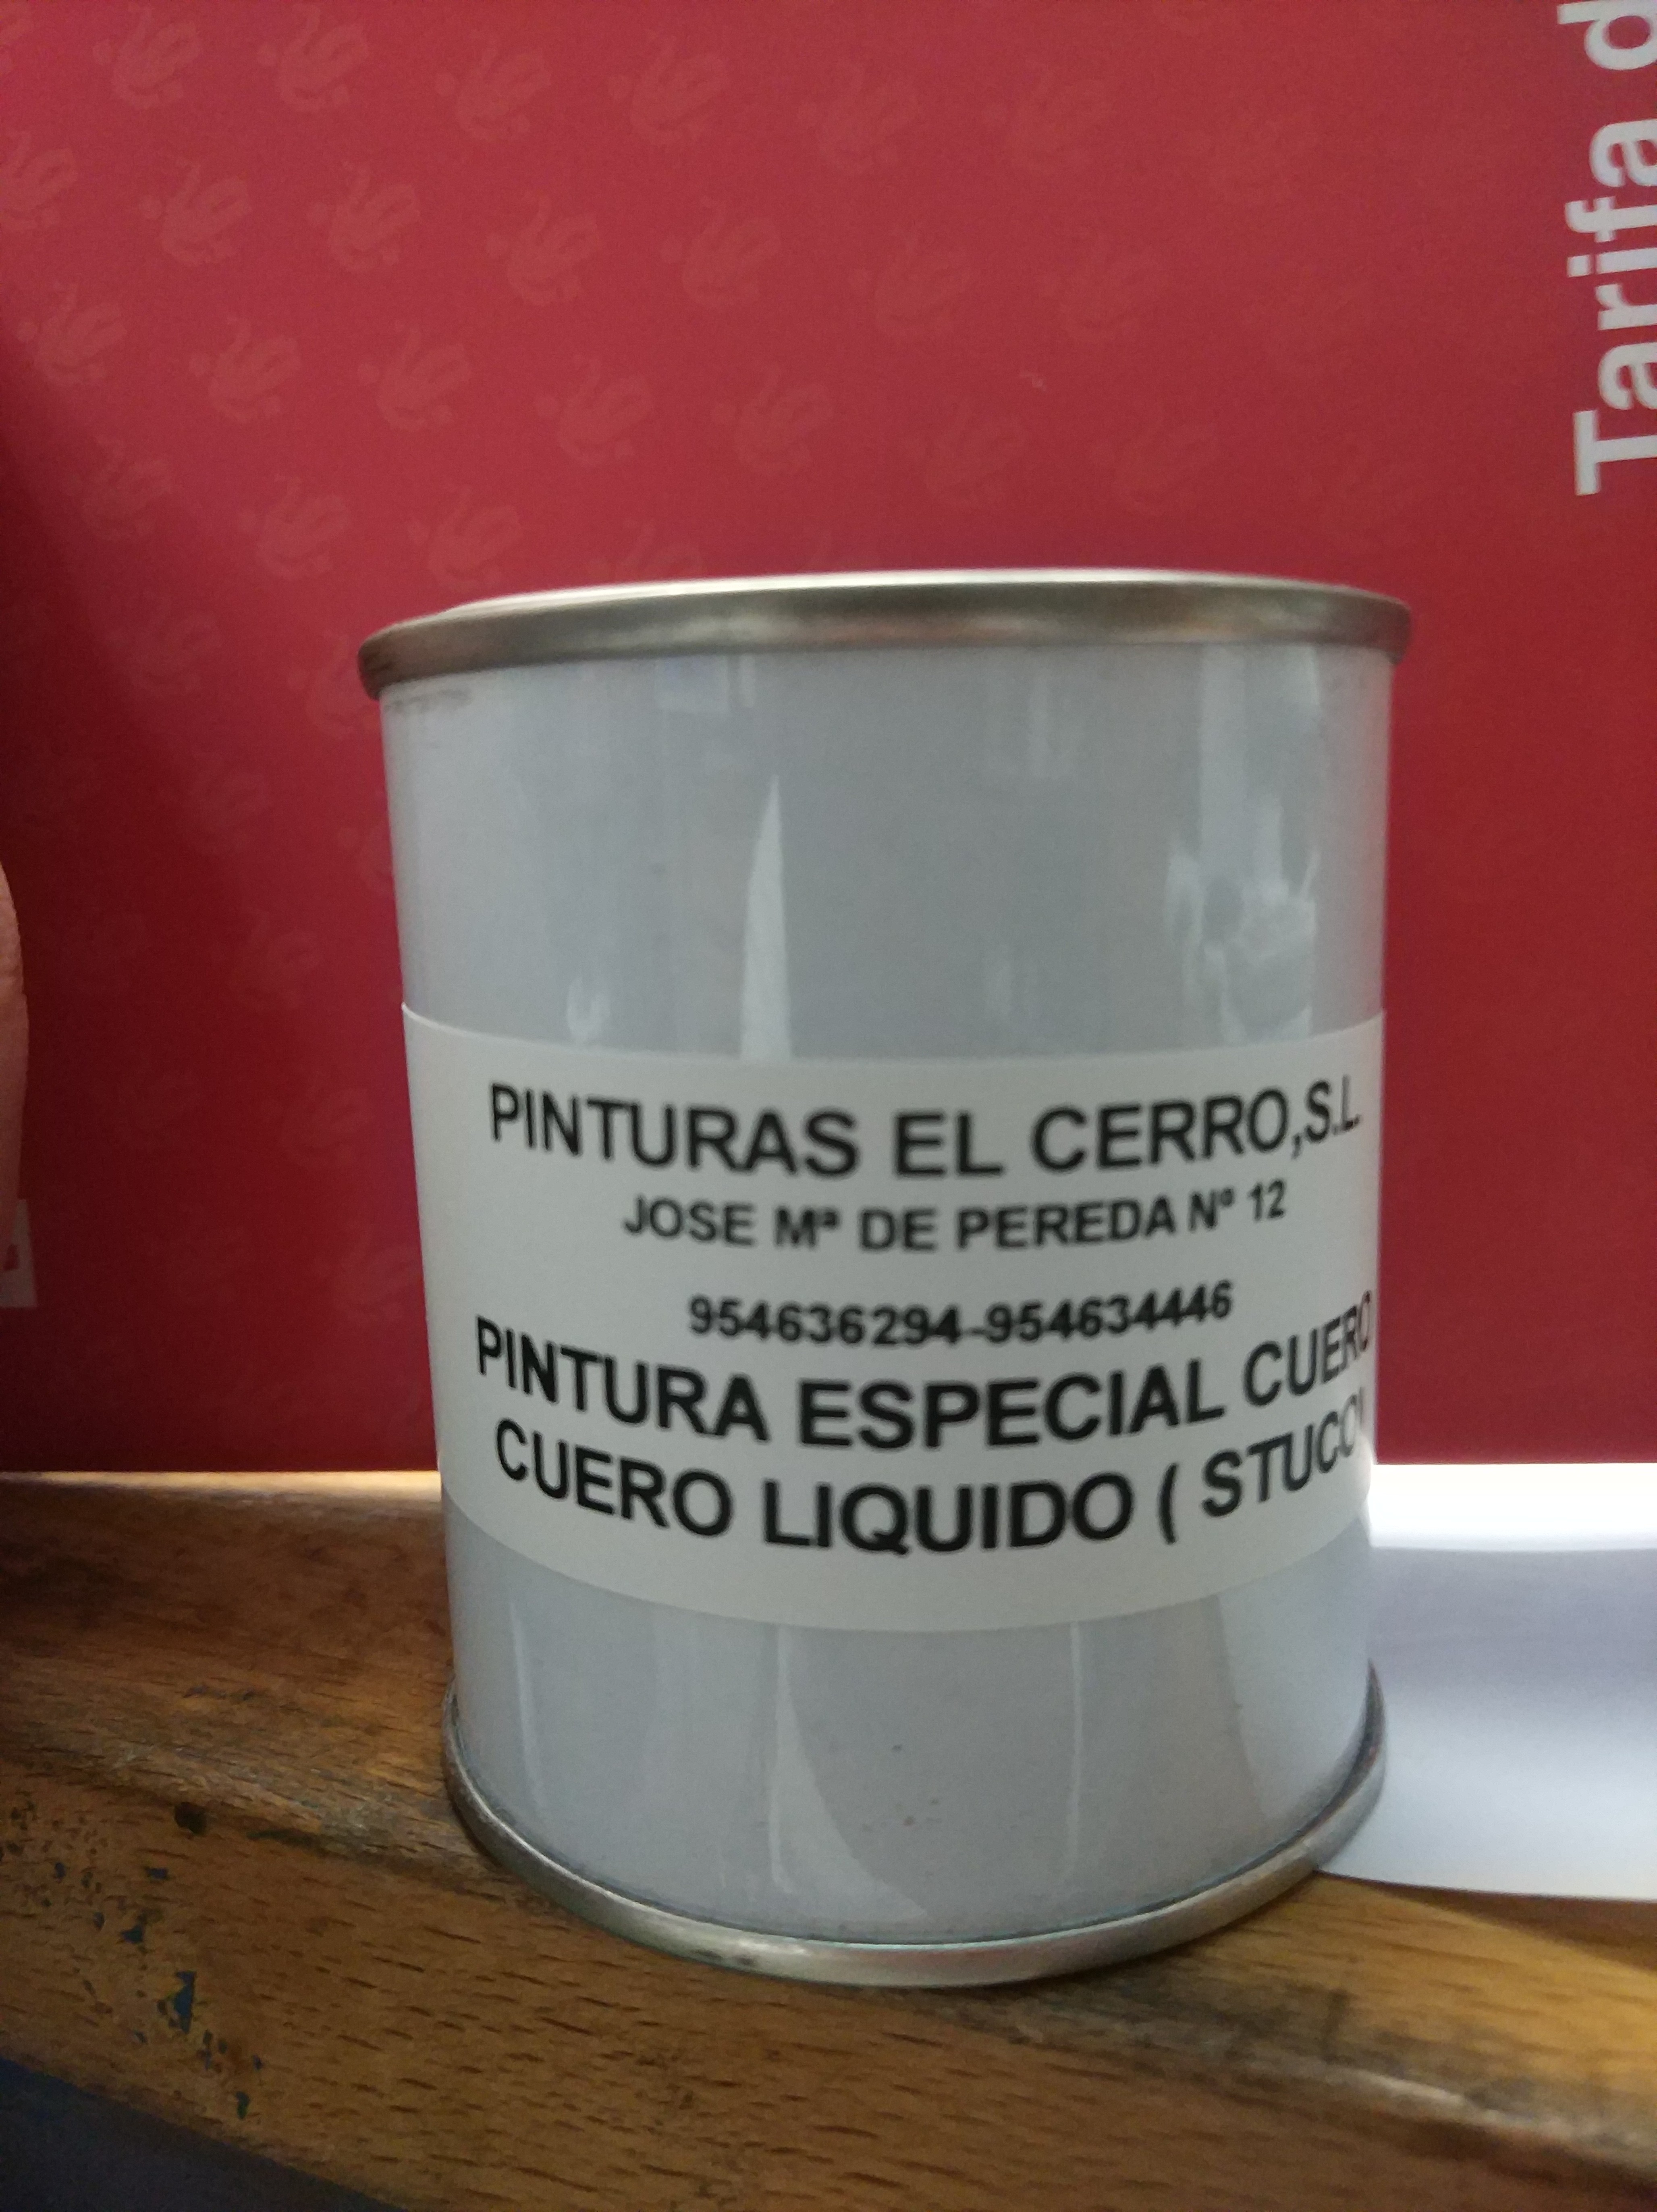 https://pinturaselcerro.com/588/cuero-liquido-estuco-125-ml.jpg